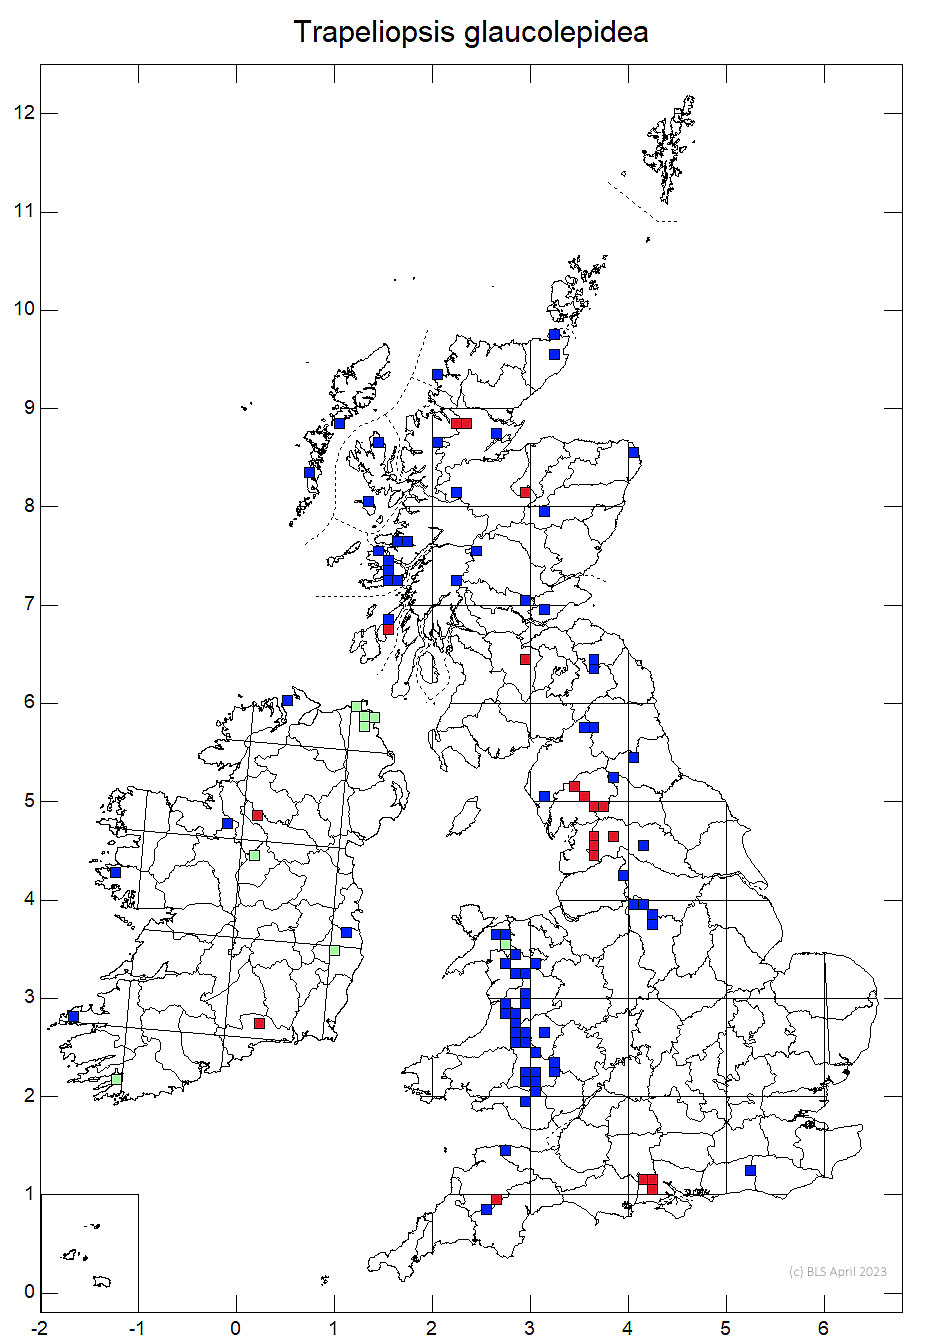 Trapeliopsis glaucolepidea 10km sq distribution map